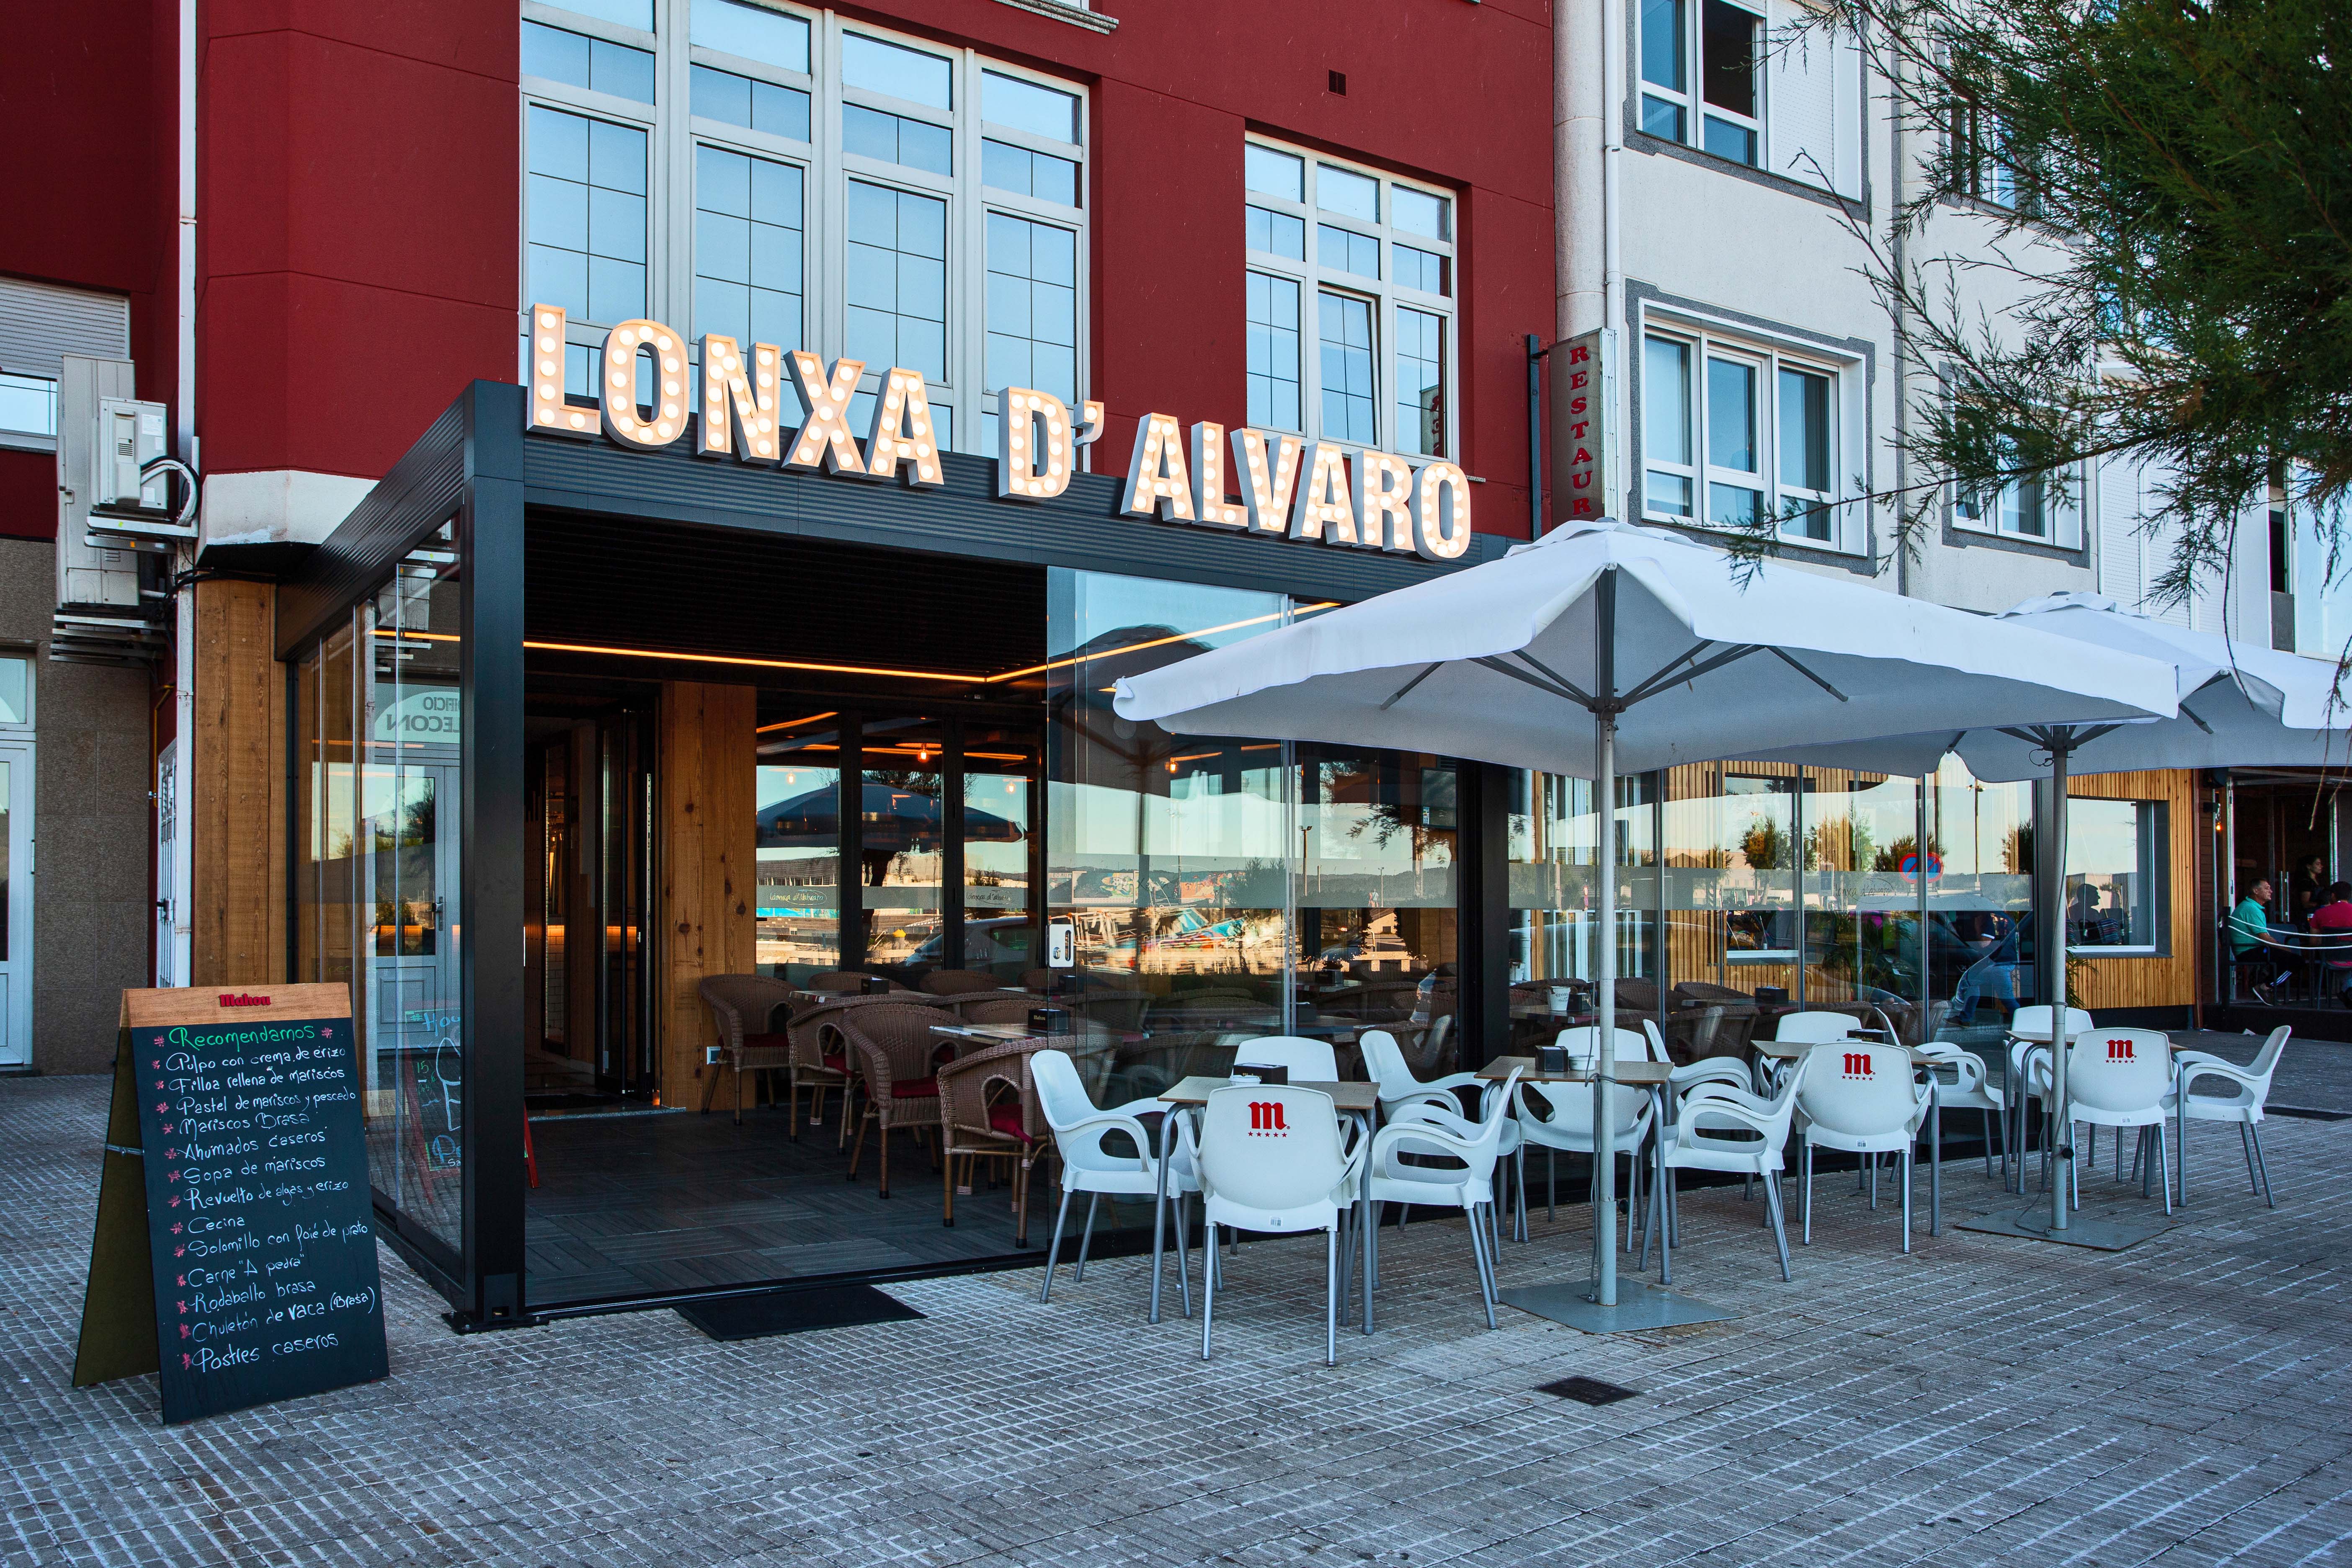 Restaurante Lonxa Dalvaro